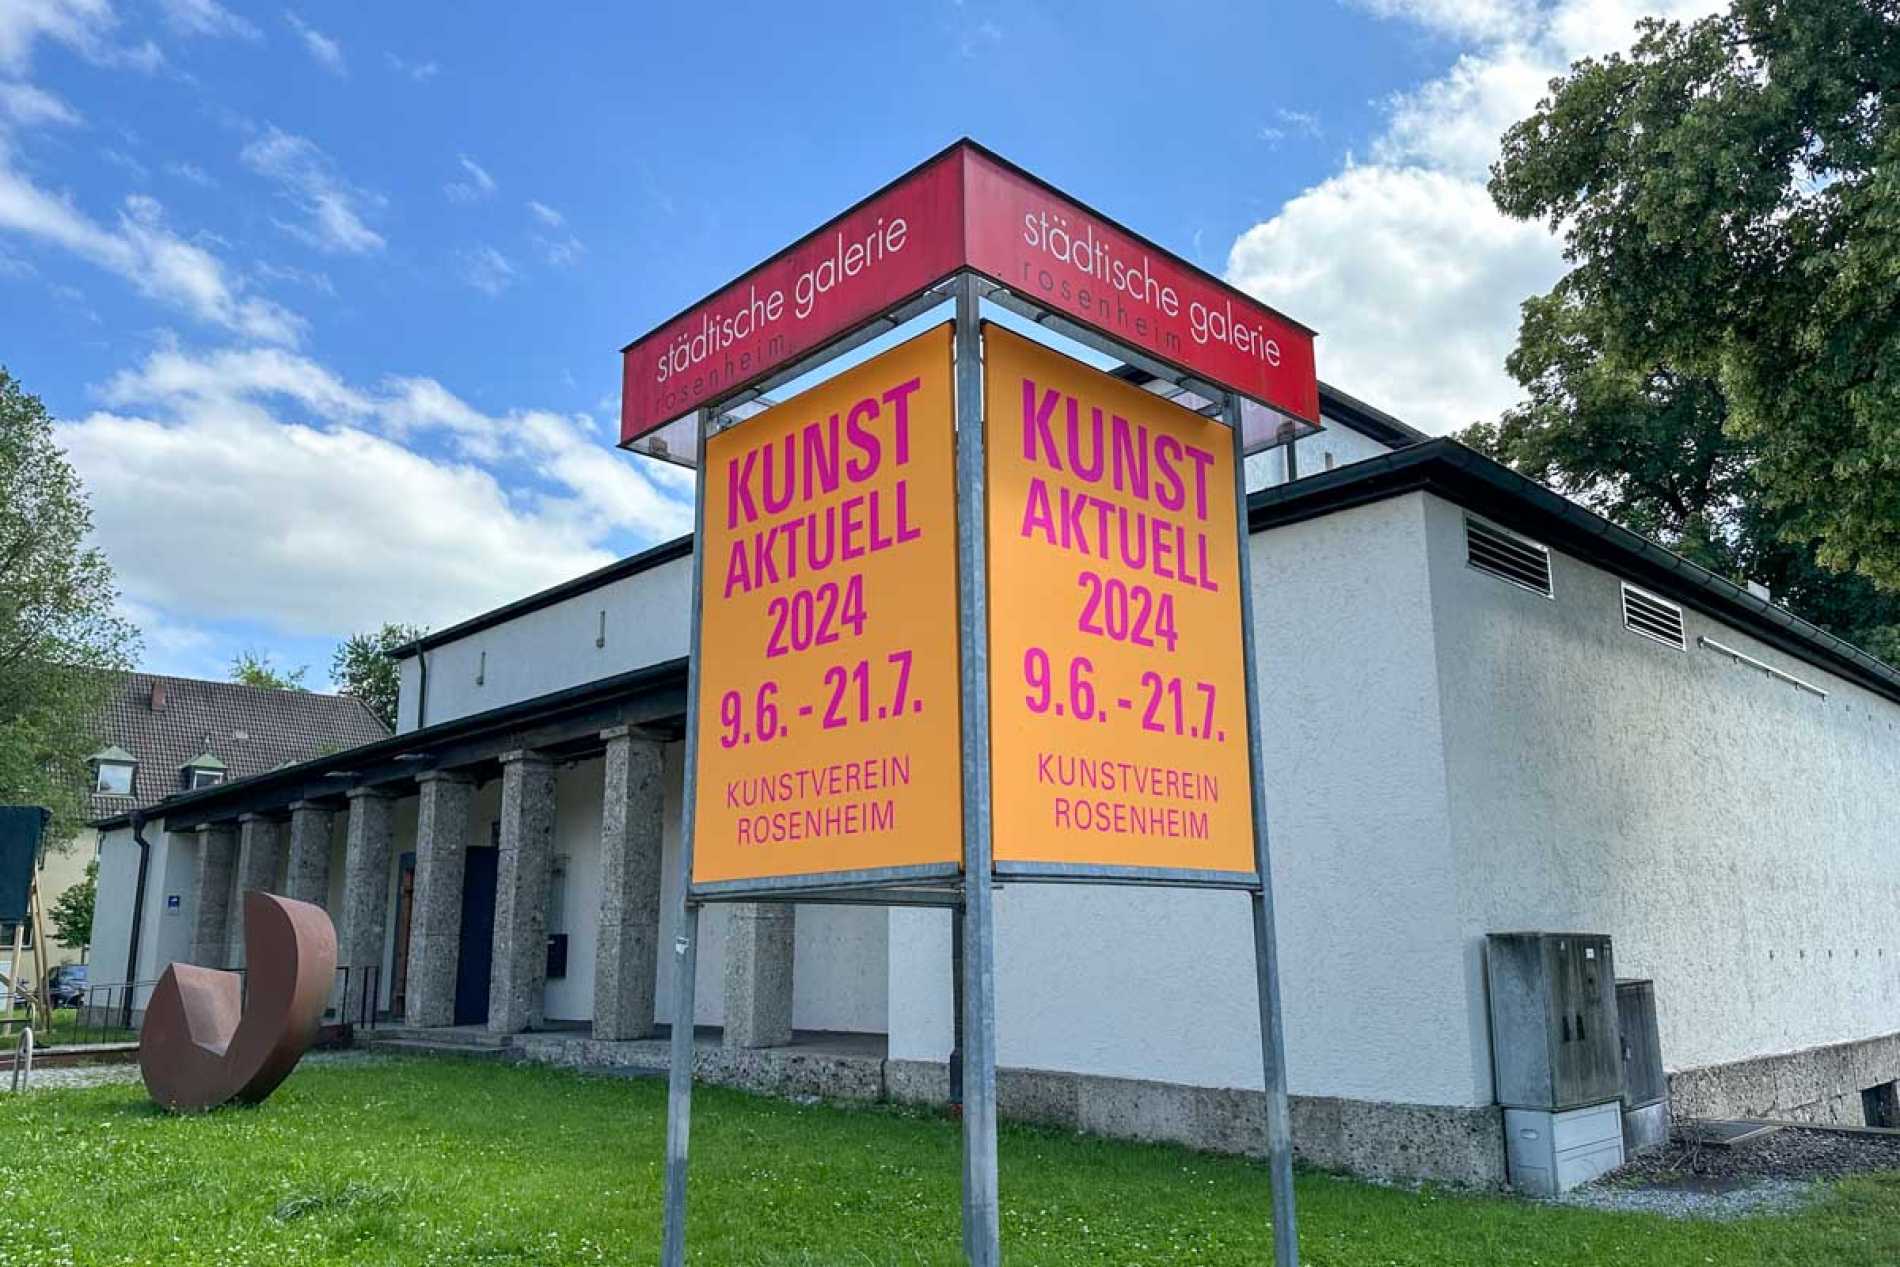 Kunstverein Rosenheim Jahresausstellung »Kunst Aktuell 2024«